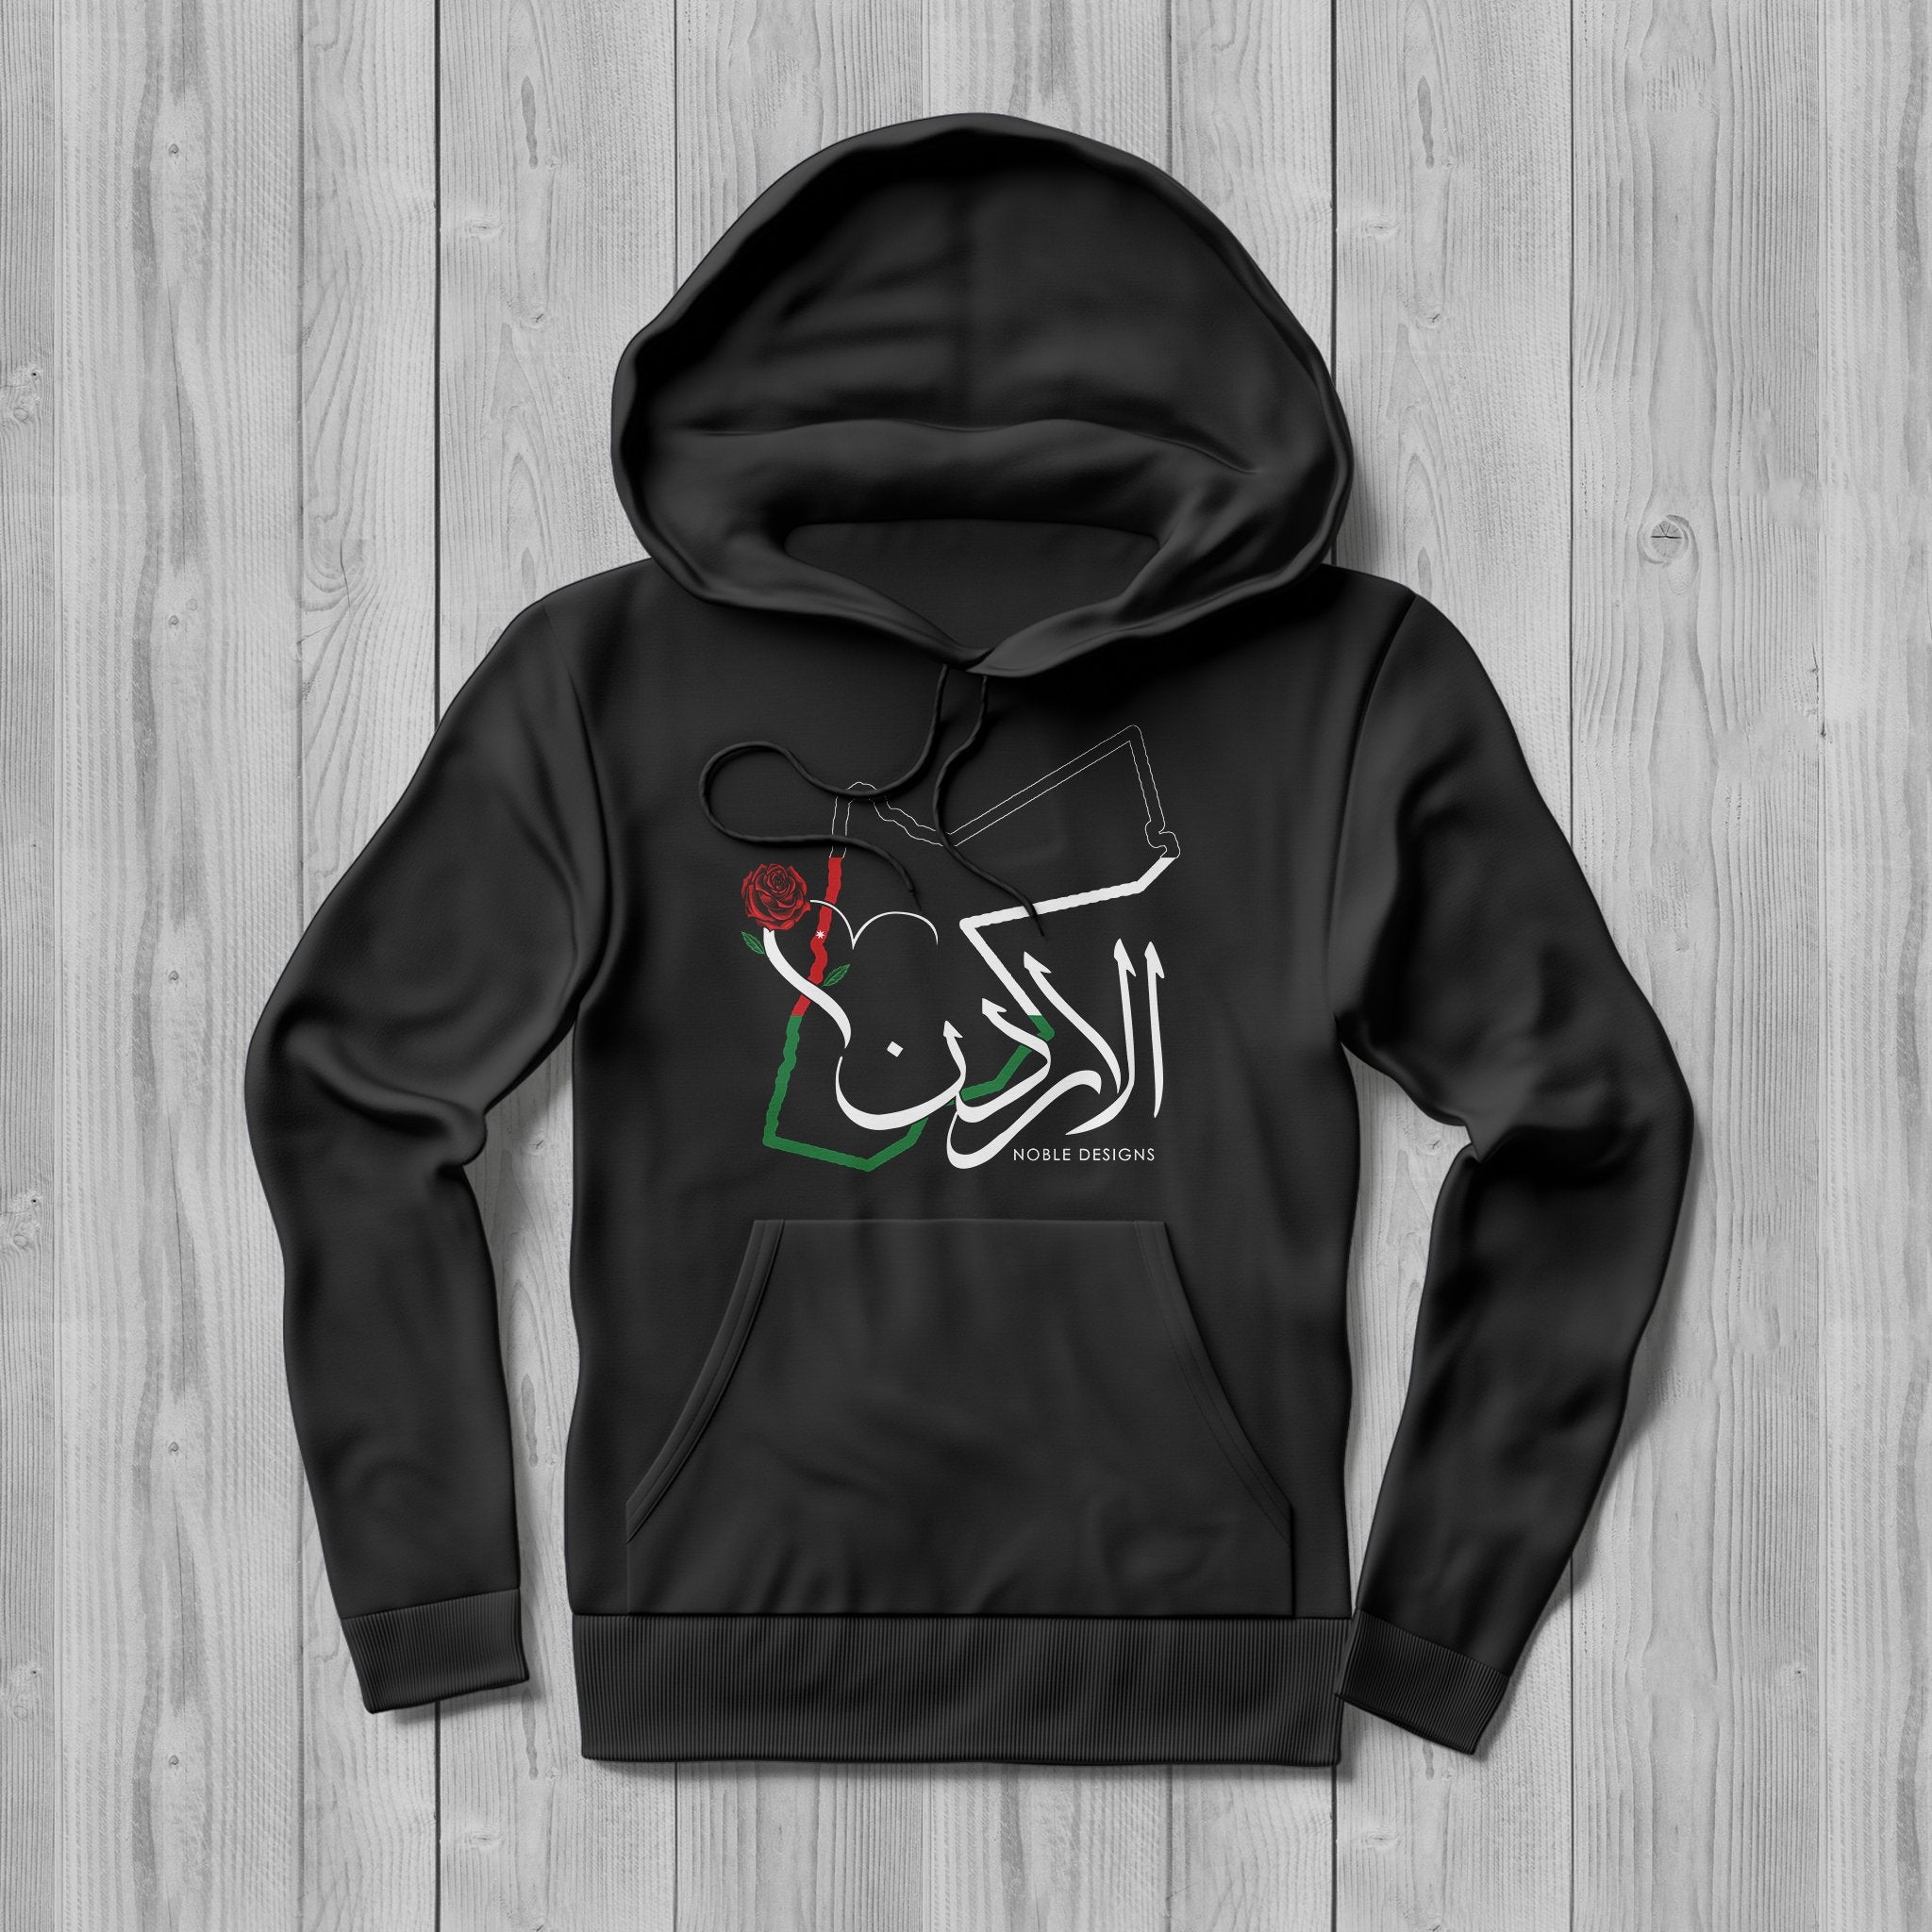 womens jordan hoodie